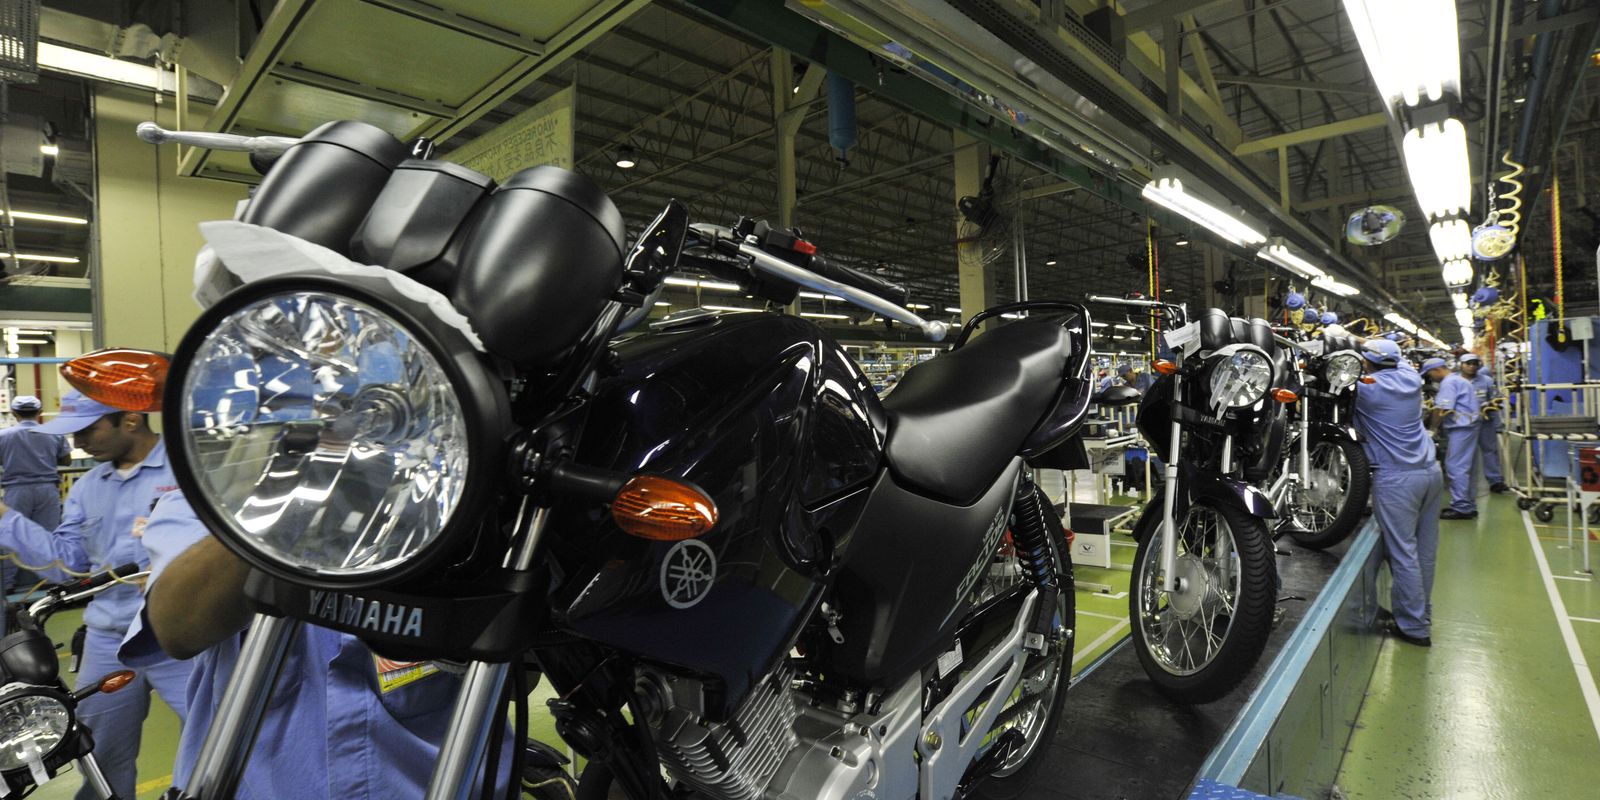 Fábrica da Yamaha. Linha de montagem de motocicletas Yamaha. Chão de fábrica. Manaus (AM) 26.10.2010 - Foto: José Paulo Lacerda